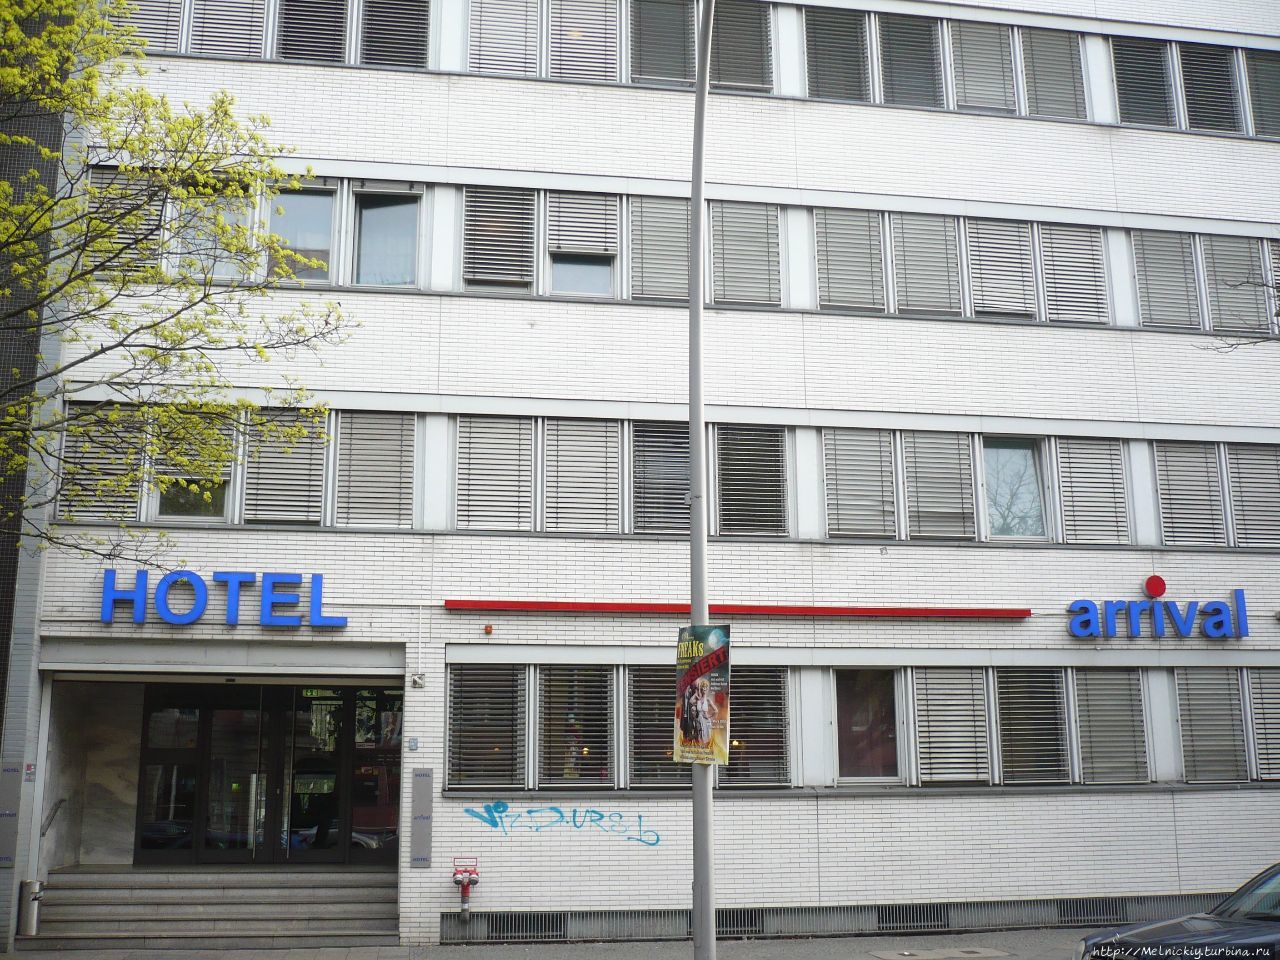 Отель «Arrival» / Hotel 